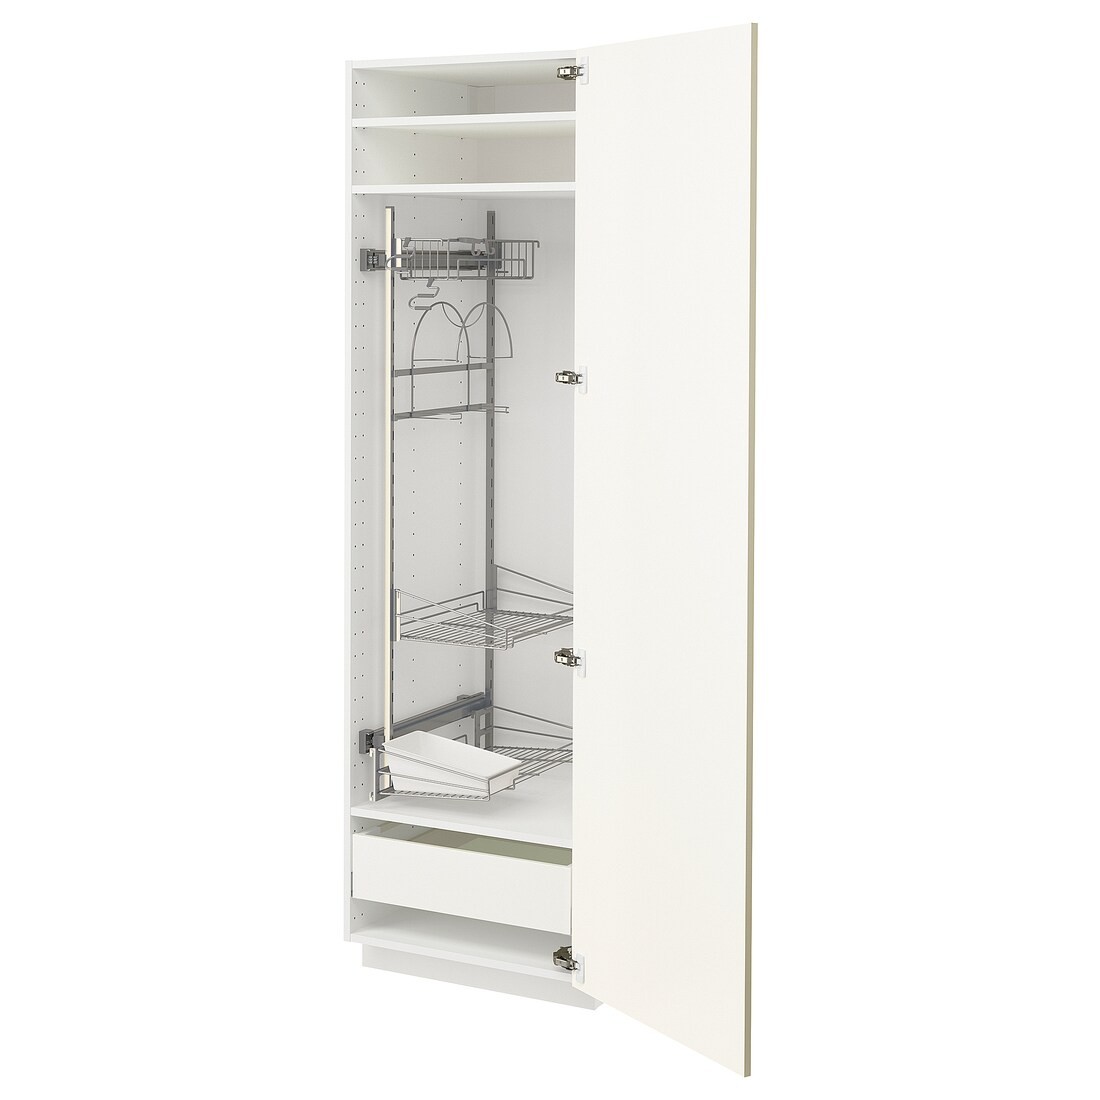 IKEA METOD МЕТОД / MAXIMERA МАКСИМЕРА Высокий шкаф с отделением для аксессуаров для уборки, белый / Vallstena белый 69507412 695.074.12